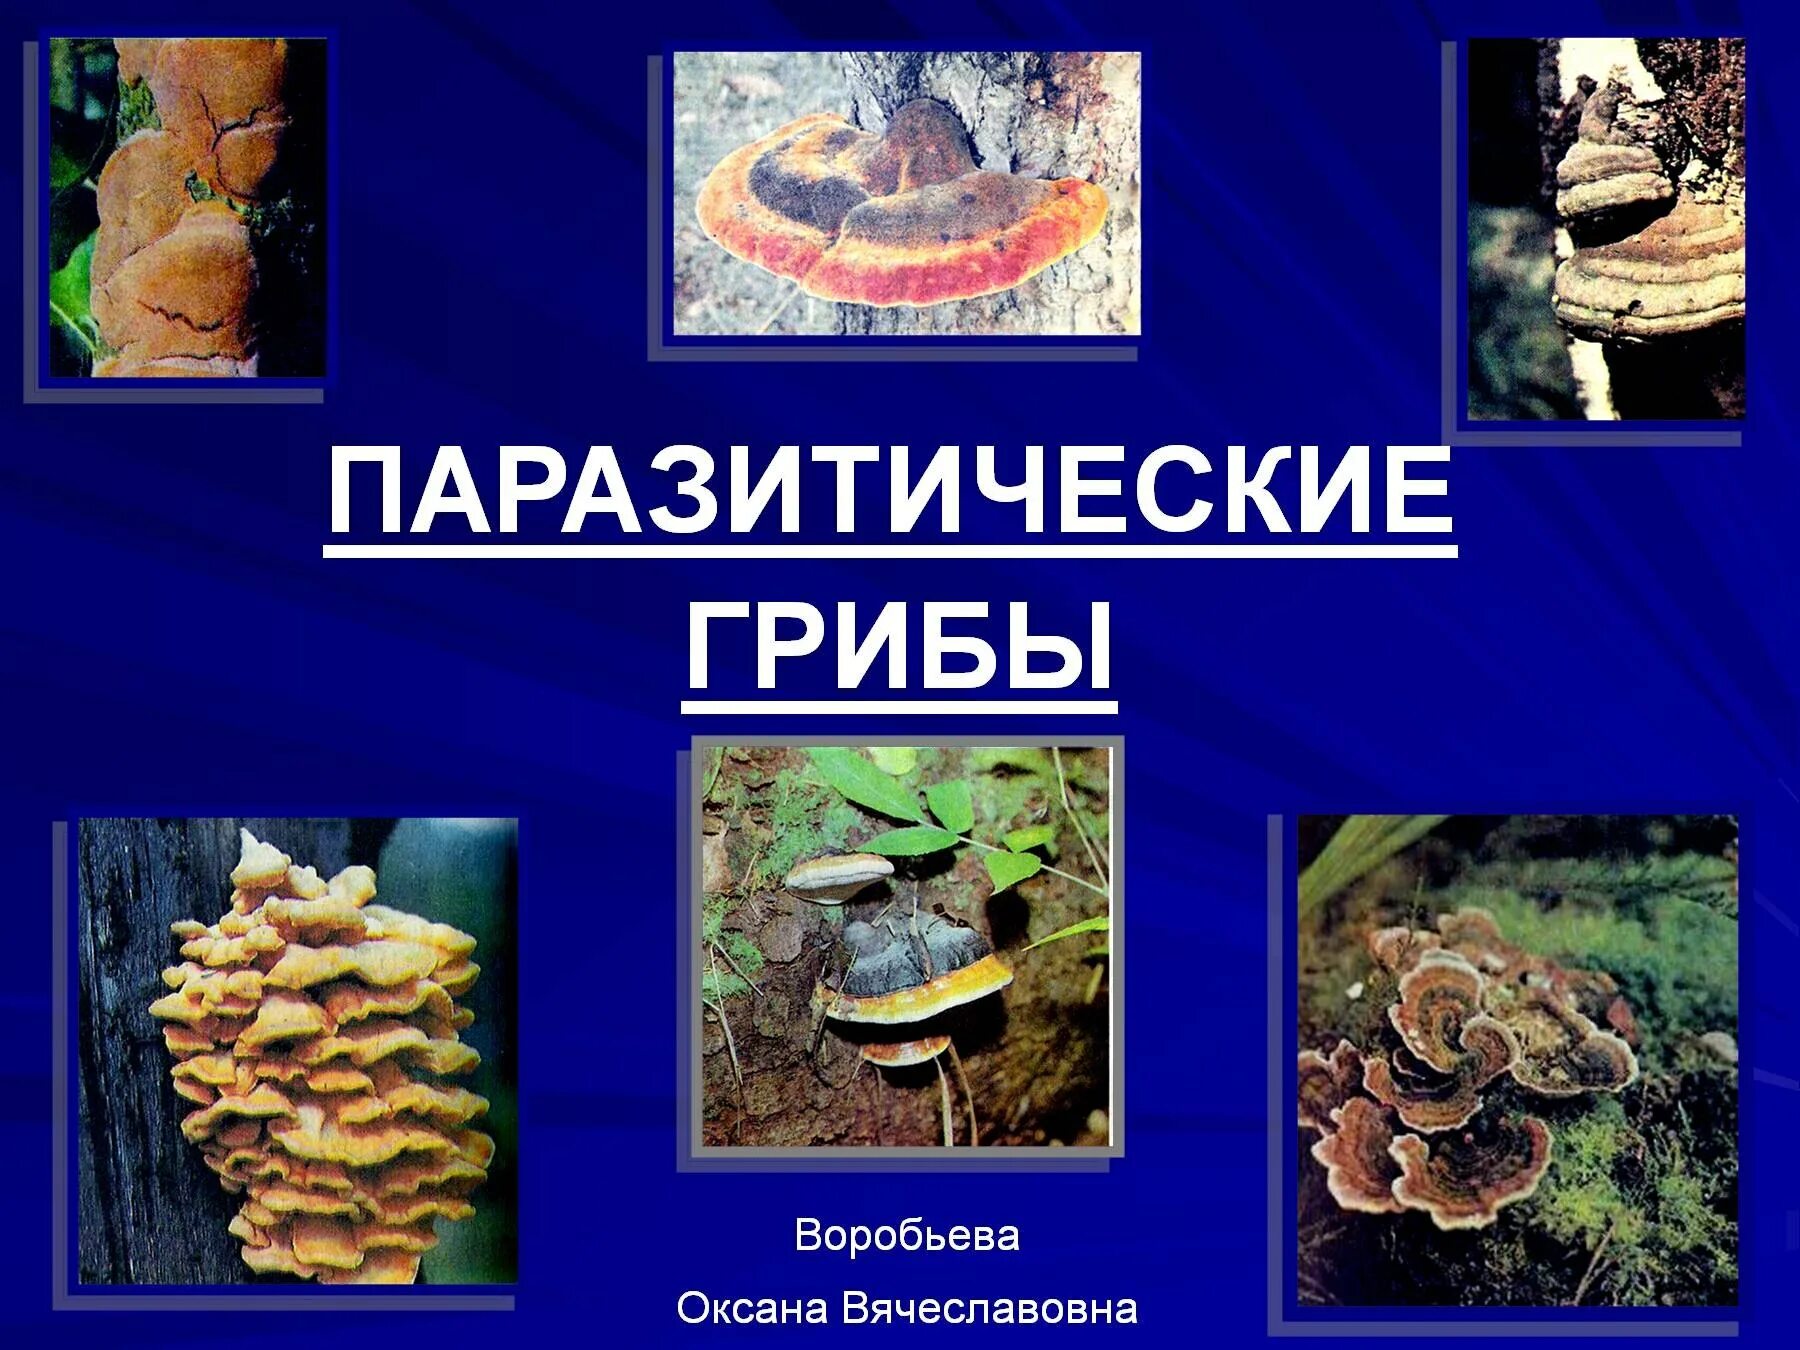 Сообщение на тему грибы паразиты. Паразитические грибы. Грибы паразиты биология. Презентация на тему грибы паразиты. Паразитизм грибы.